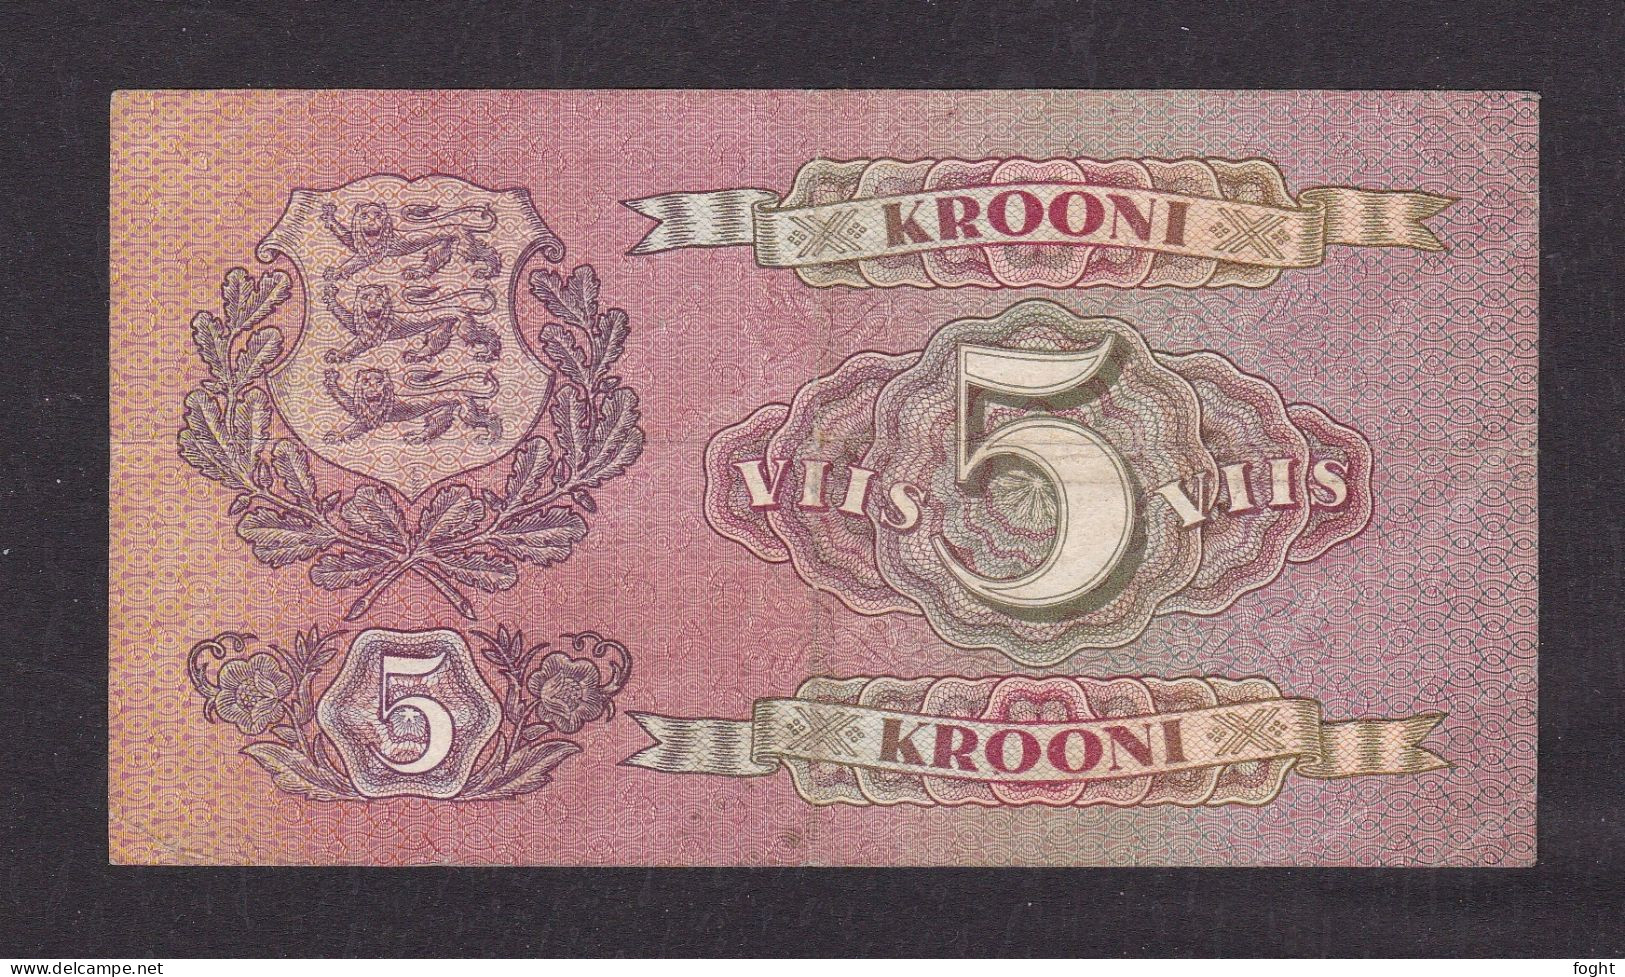 1929 Estonia Bank Of Estonia Banknote 5 Krooni,P#62A - Estland